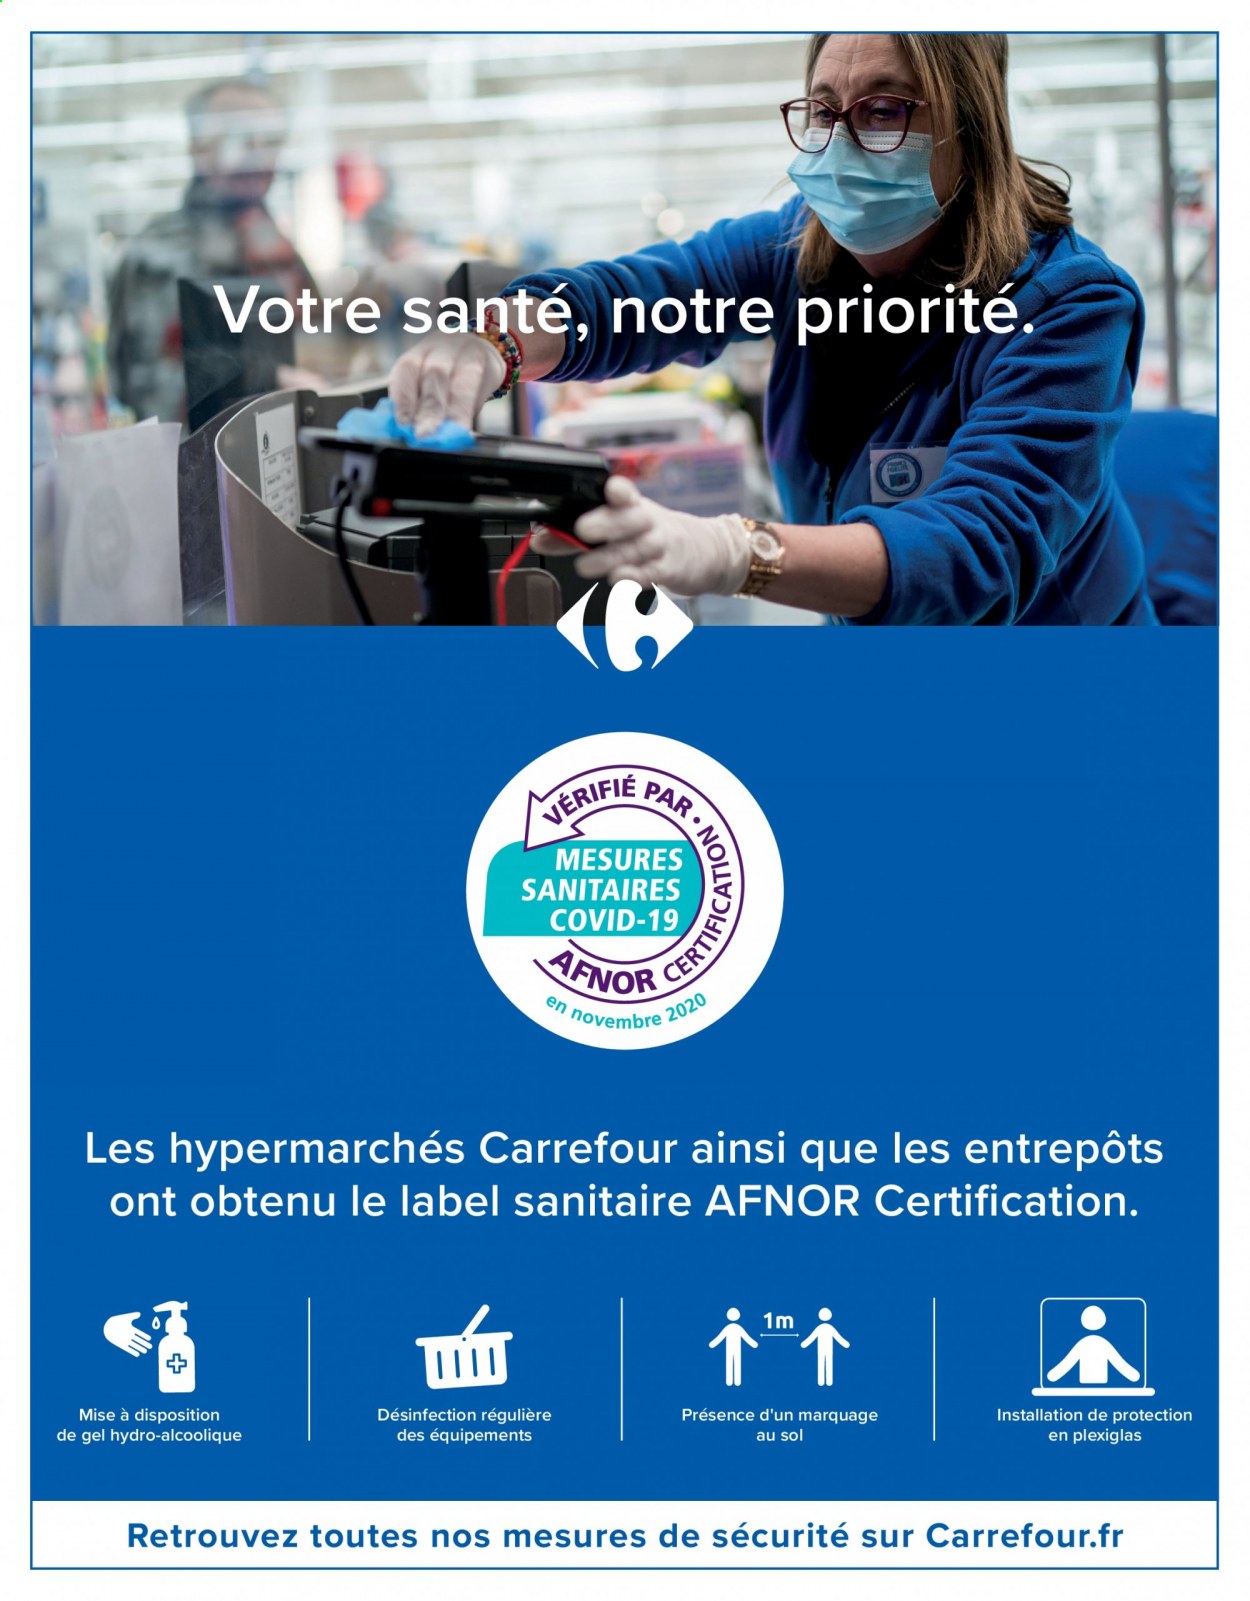 Catalogue Carrefour Hypermarchés - 20.07.2021 - 02.08.2021. 